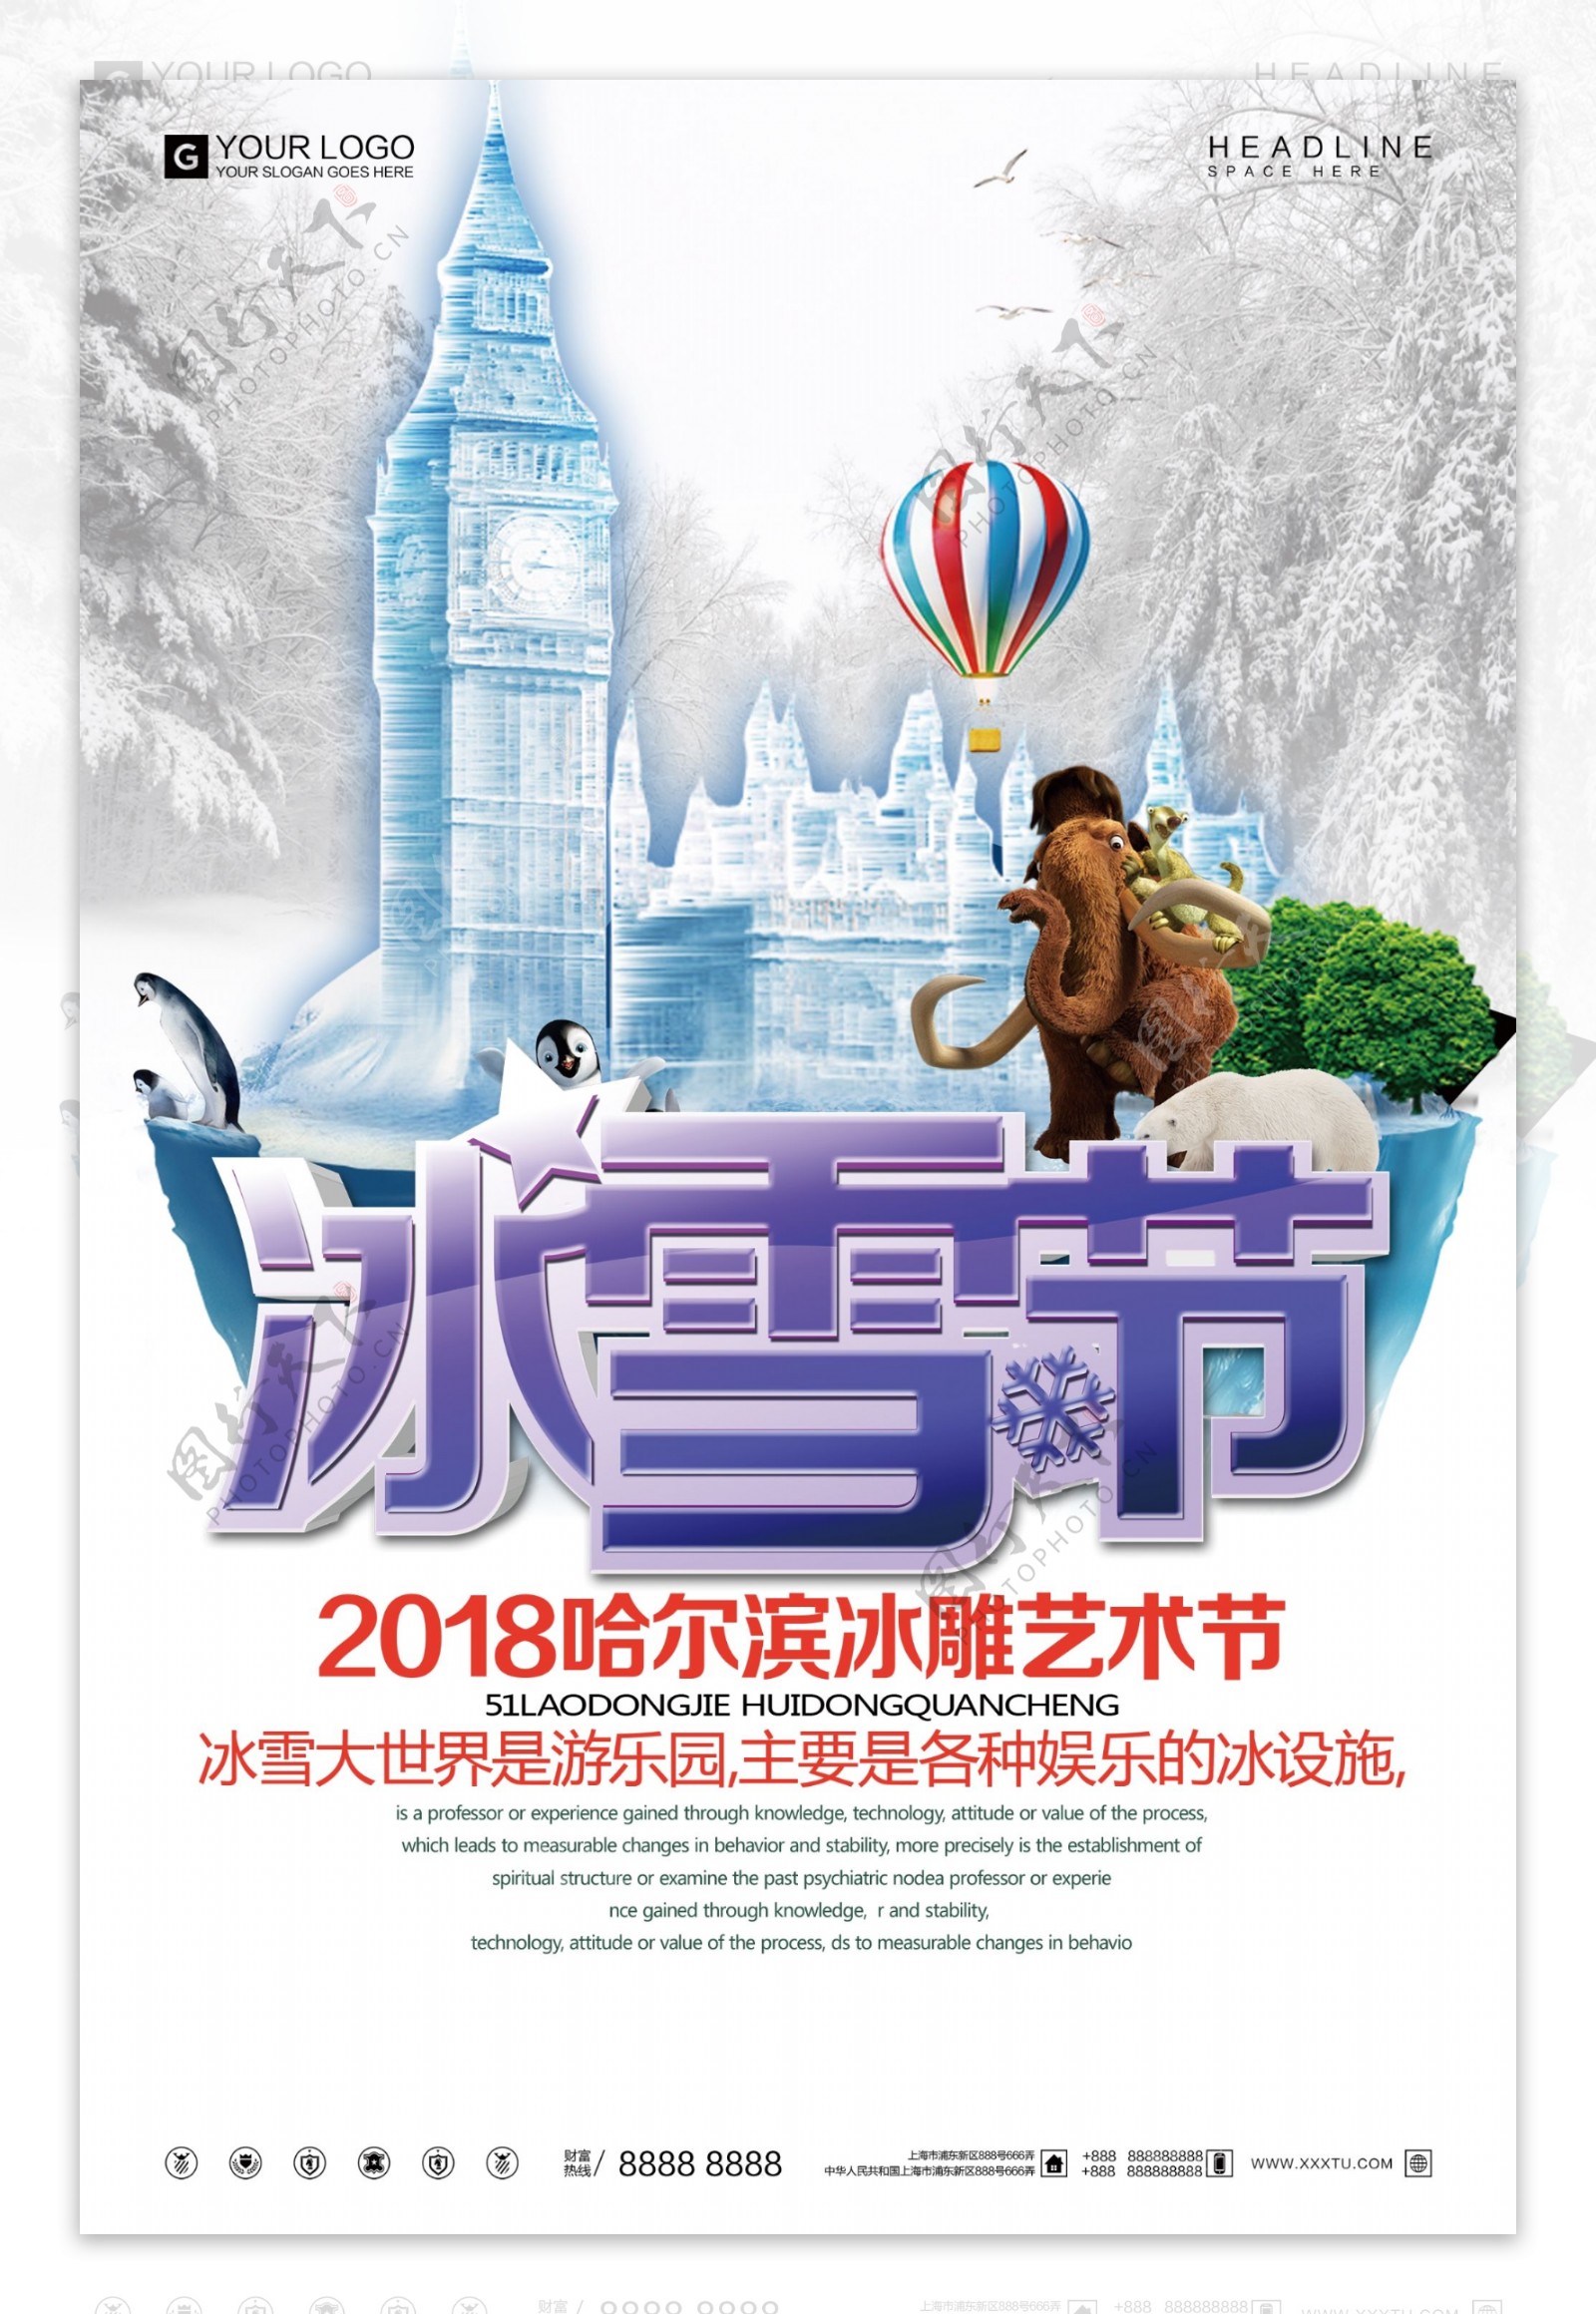 创意设计哈尔滨冰雕艺术节旅游宣传促销海报